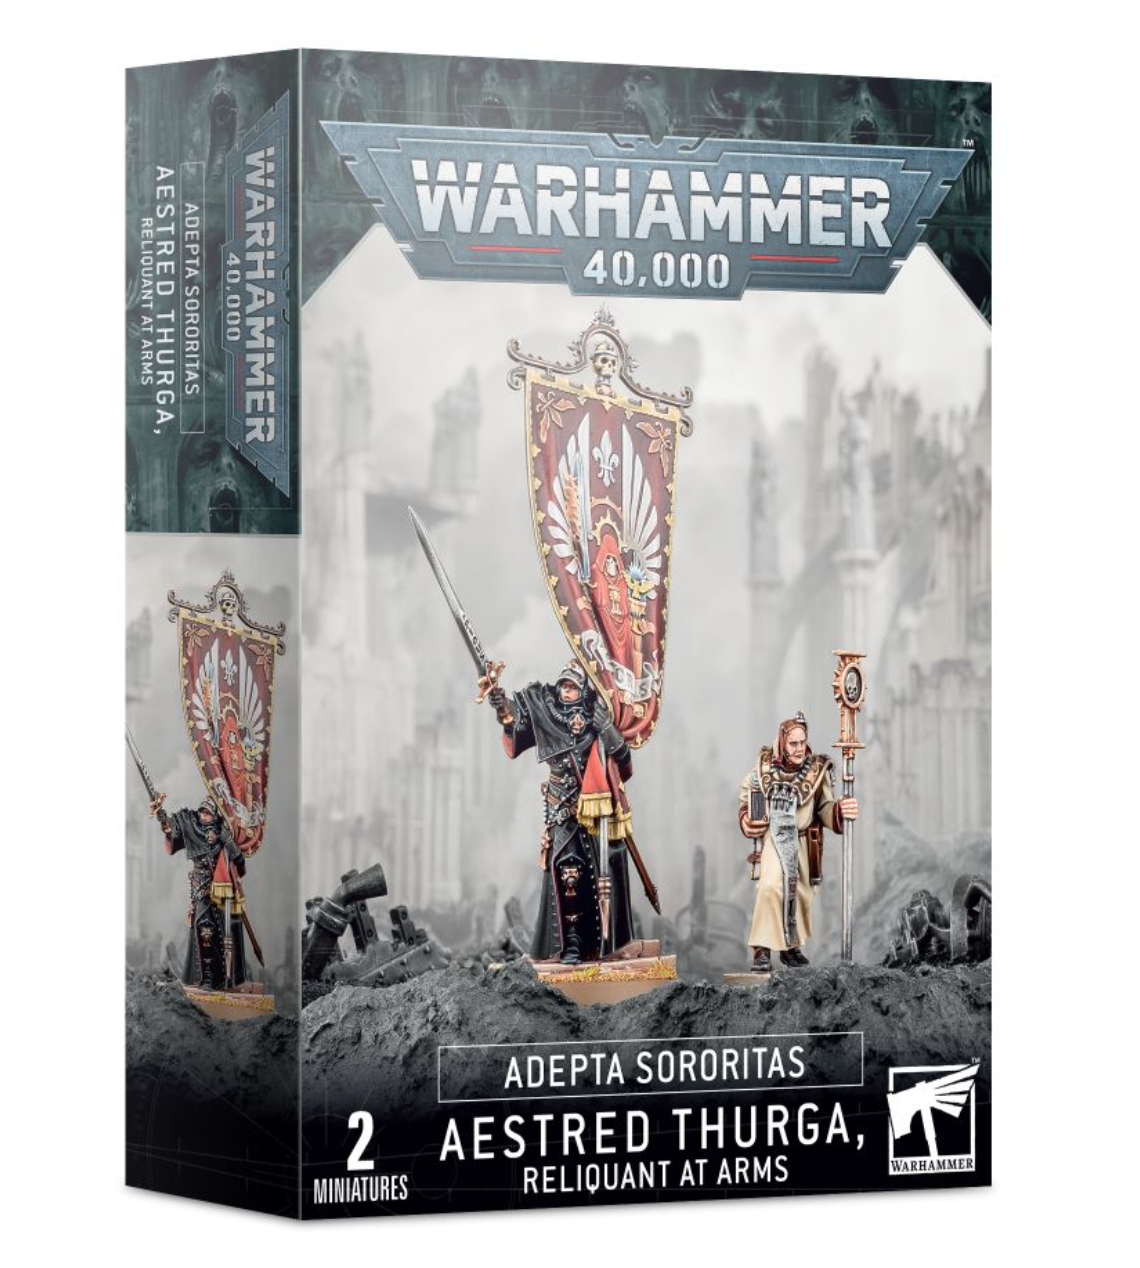 Warhammer 40,000: Adepta Sororitas - Aestred Thurga, Reliquant at Arms